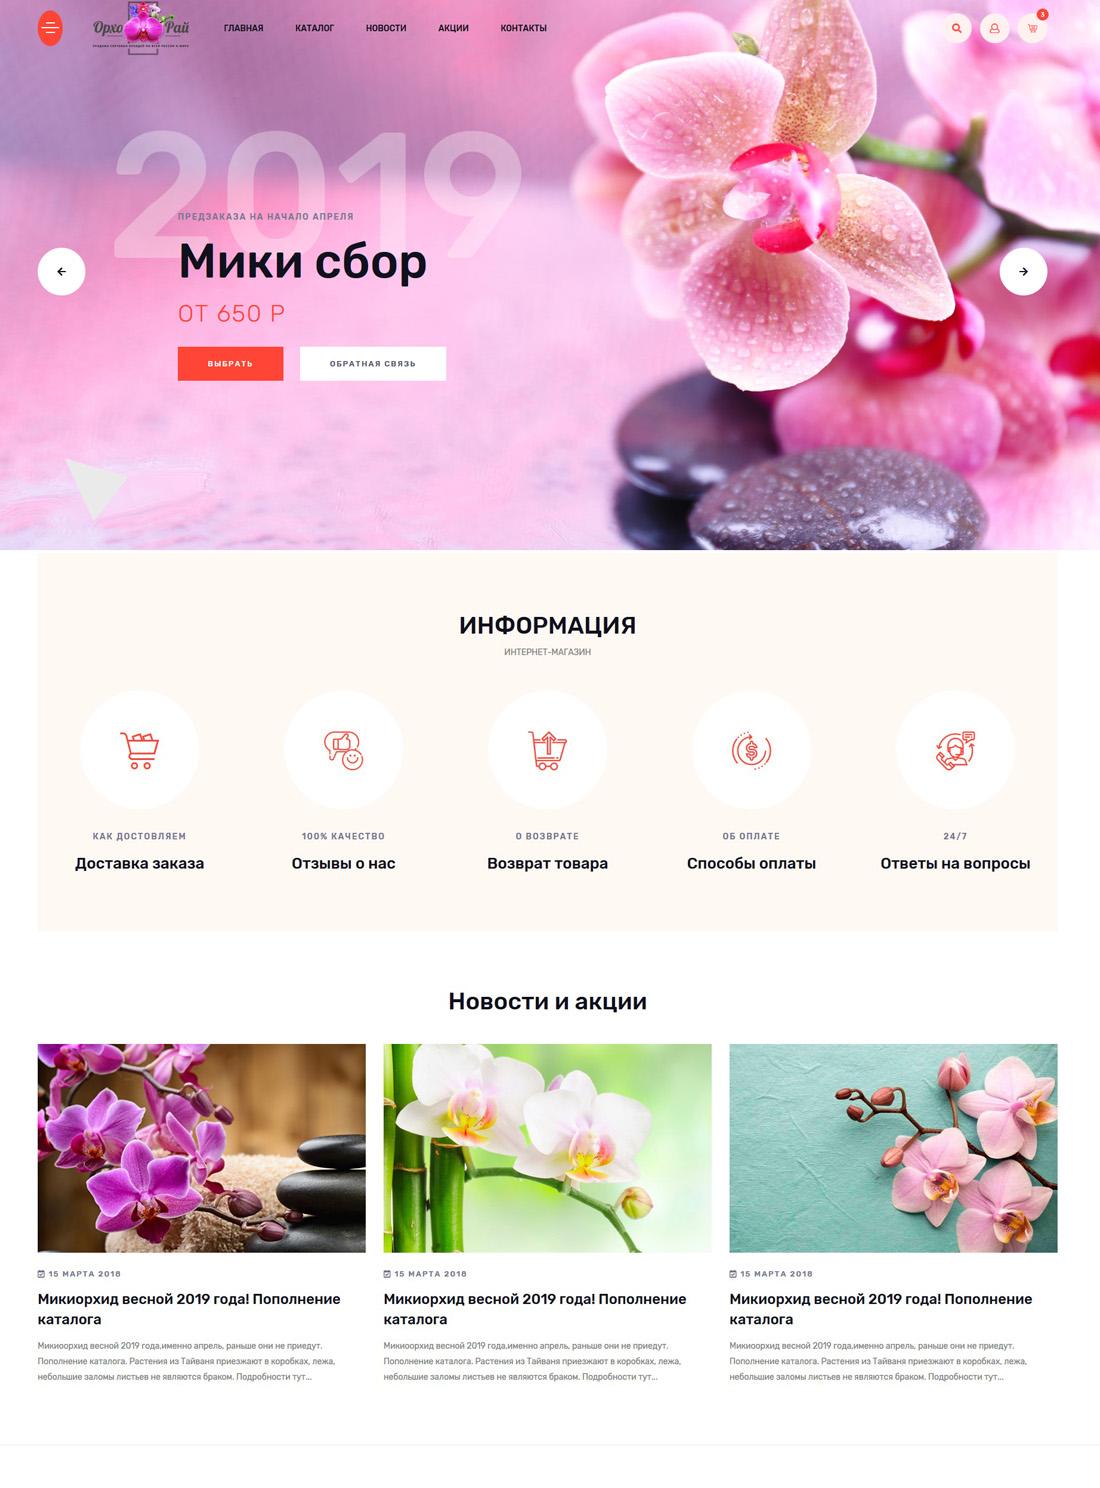 Сайт орхорай продажа оптом цветов и саженцев, интернет магазин цветов разработка веб студия